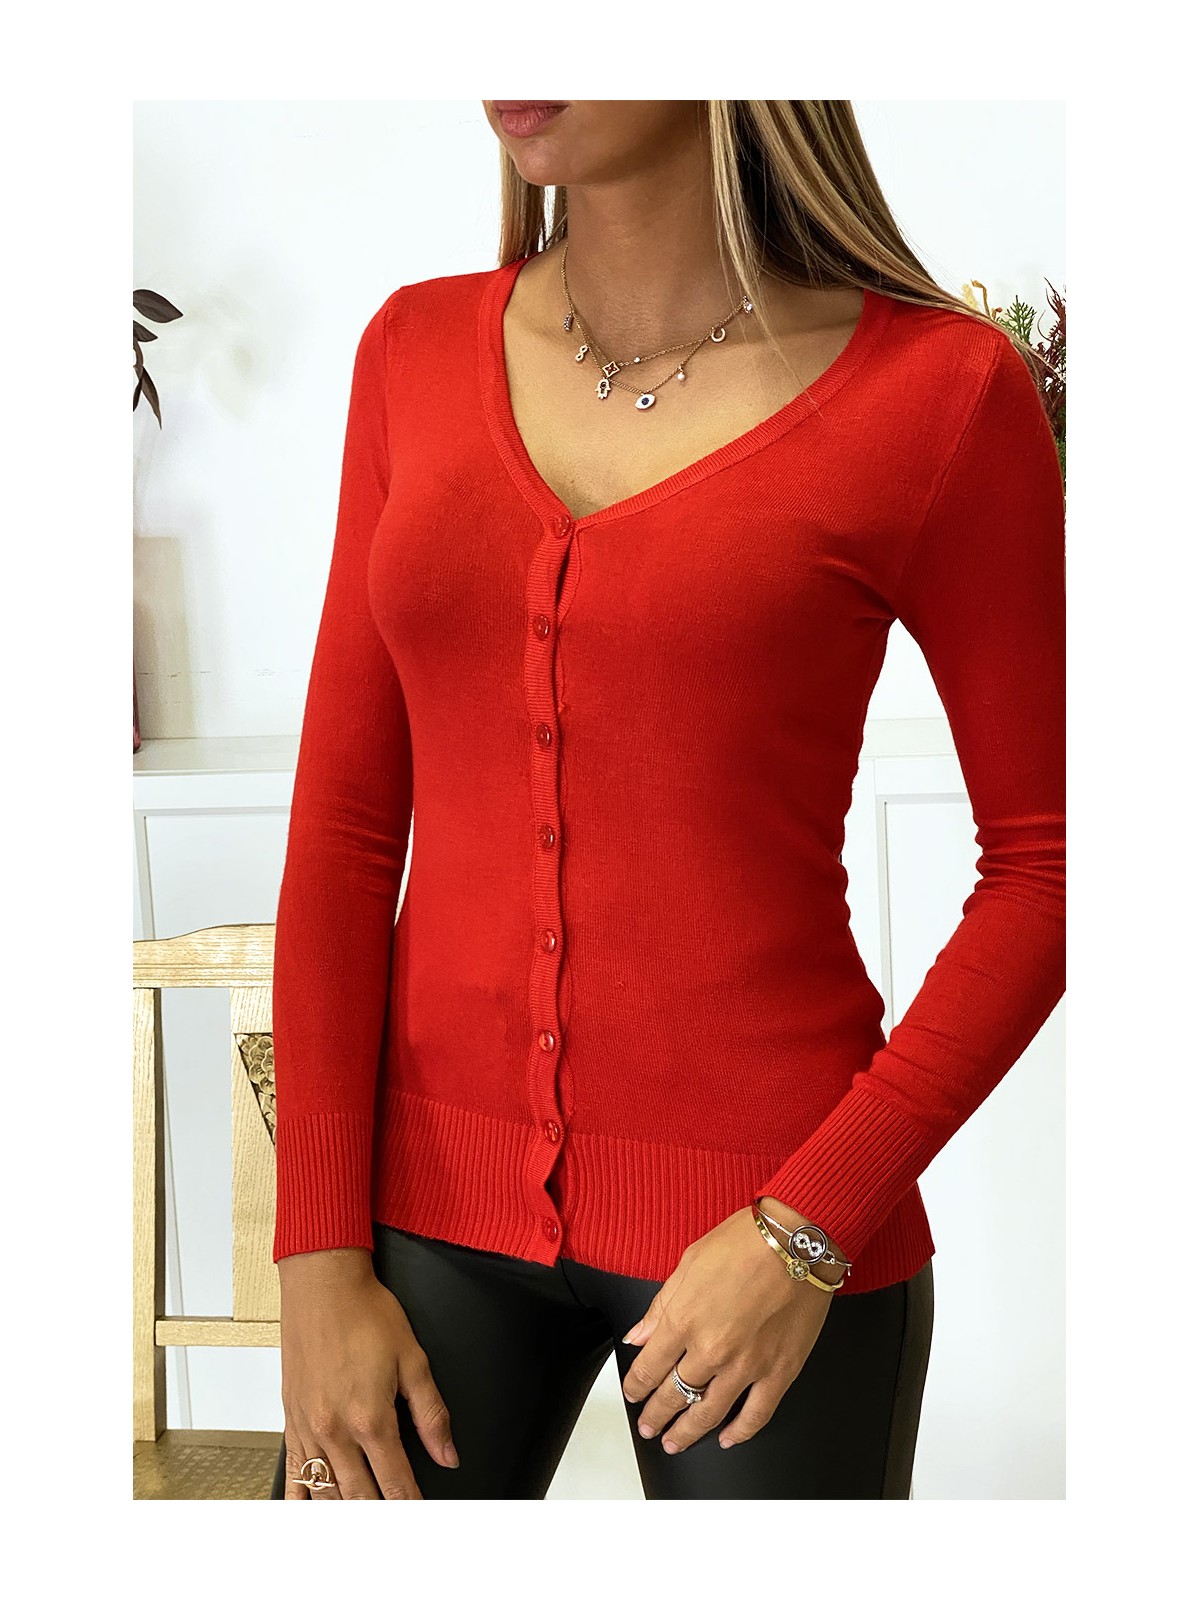 Gilet rouge en maille tricot très extensible et très doux - 2